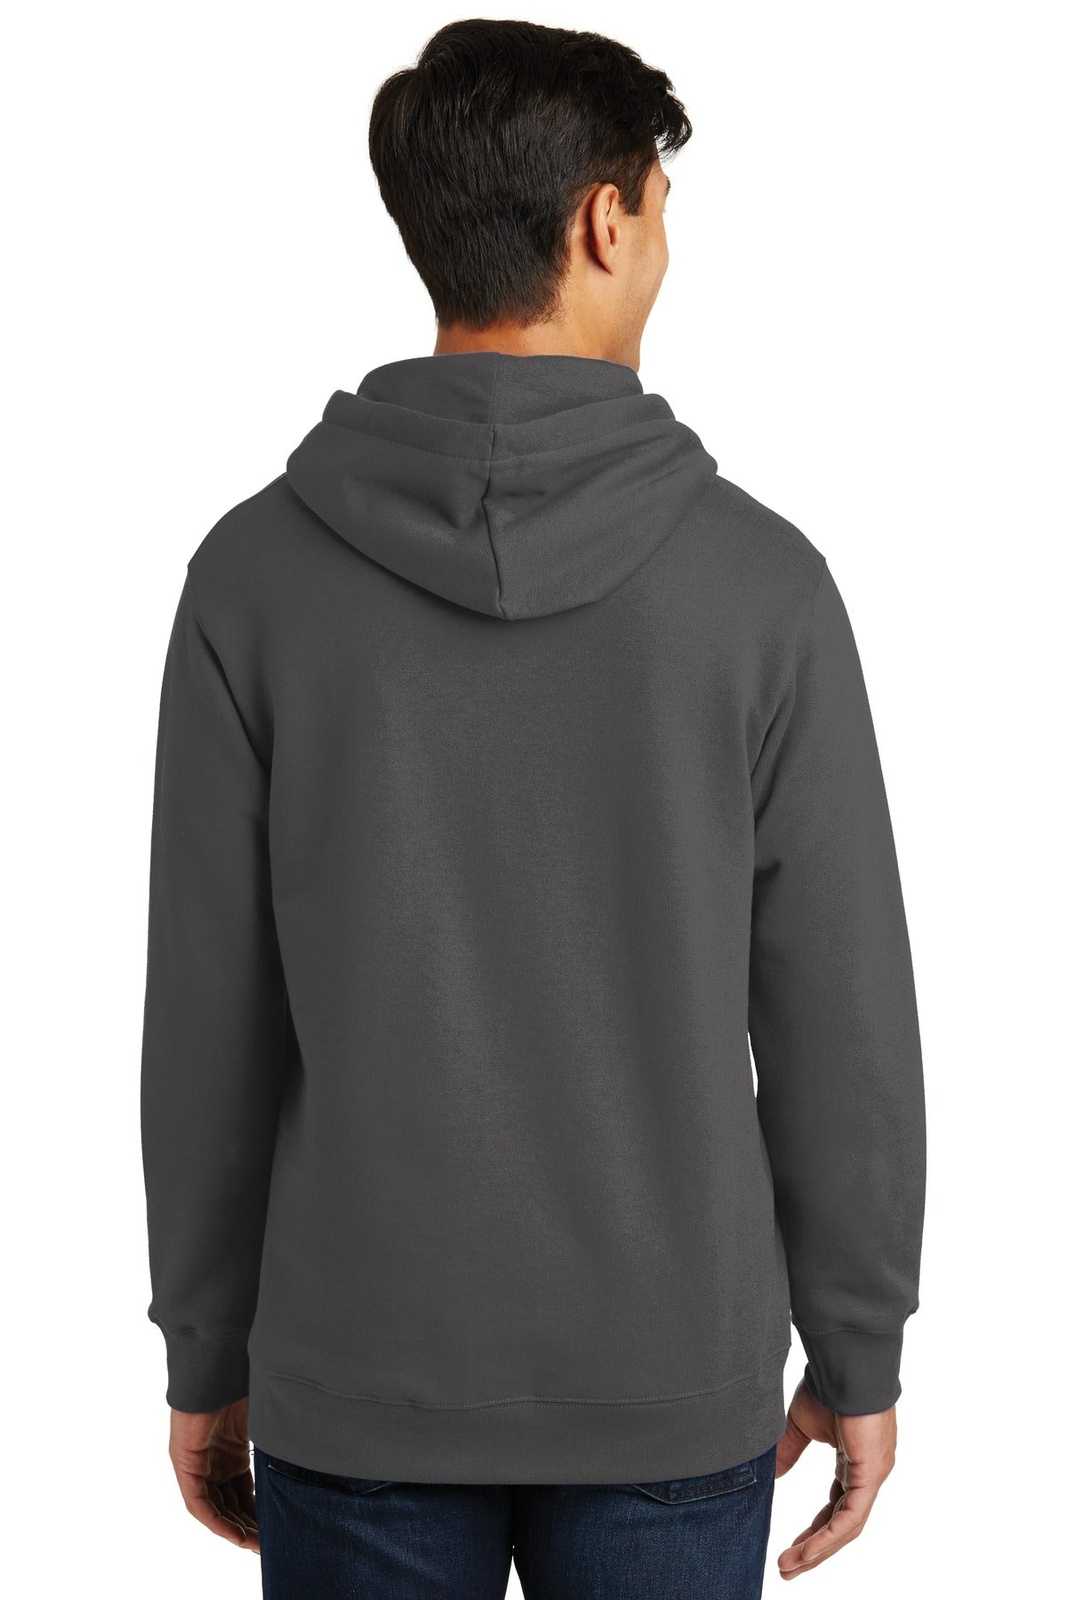 Port & Company PC850H Fan Favorite Fleece Pullover Hooded Sweatshirt - Charcoal - HIT a Double - 1